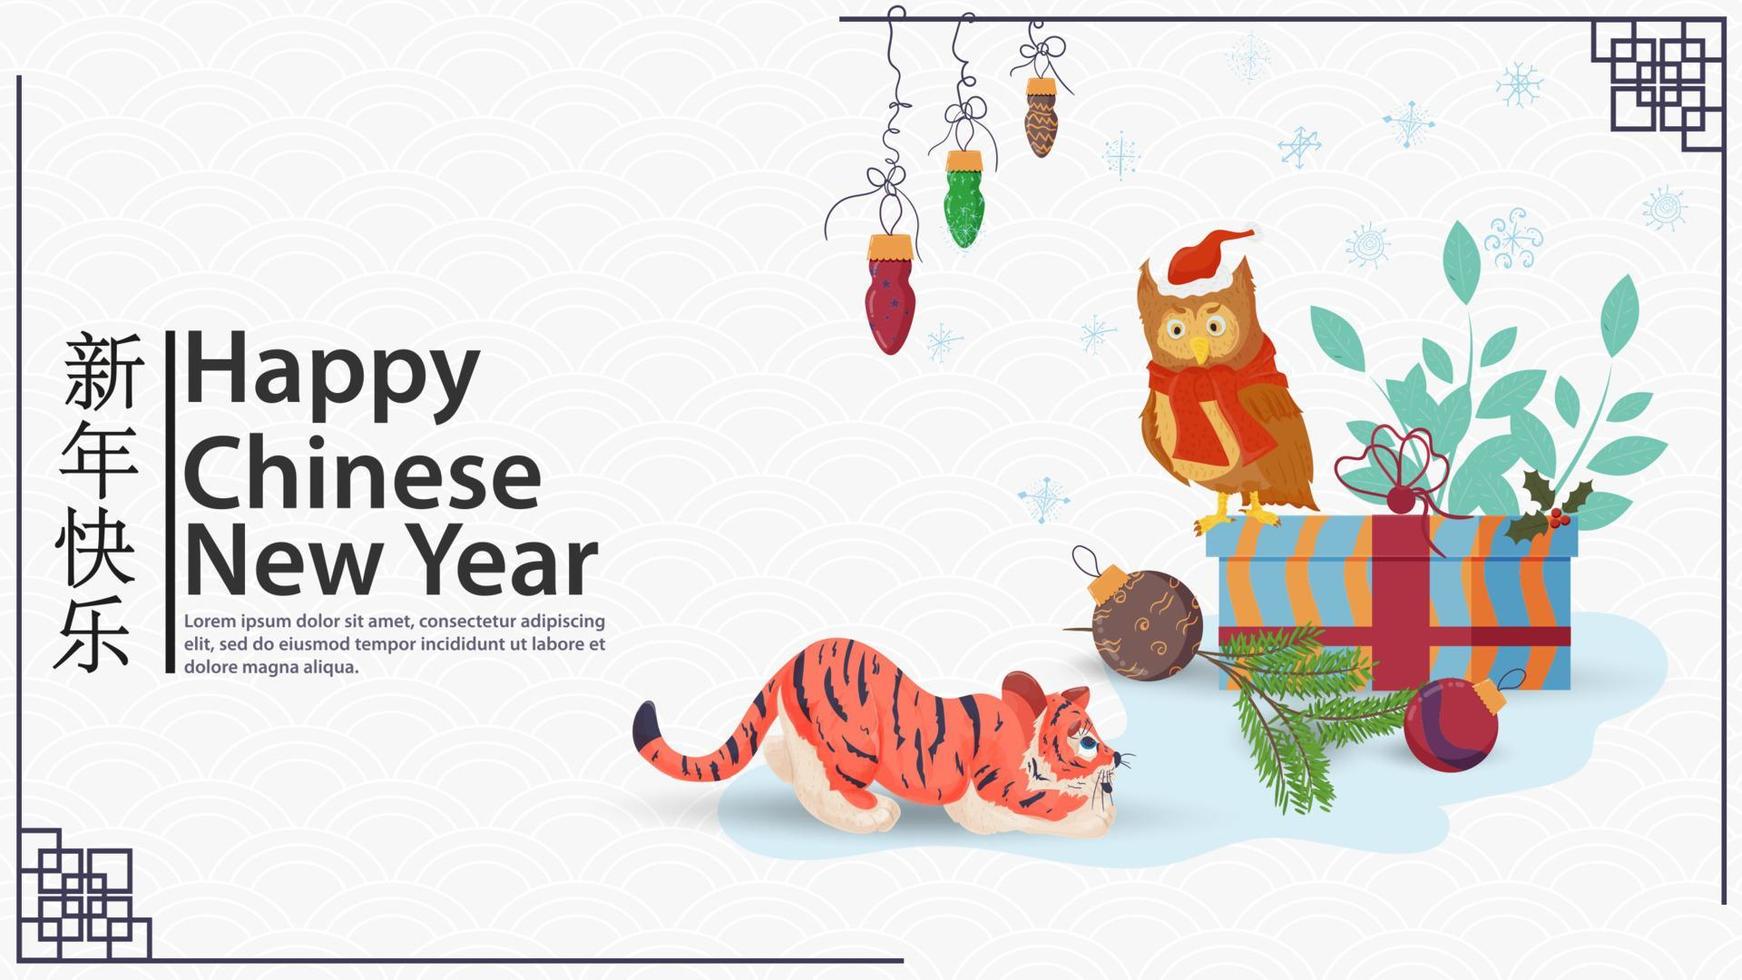 el símbolo del año nuevo chino es un pequeño cachorro de tigre que se acerca sigilosamente a un pájaro búho que se sienta en una inscripción de regalo felicitaciones vector plano